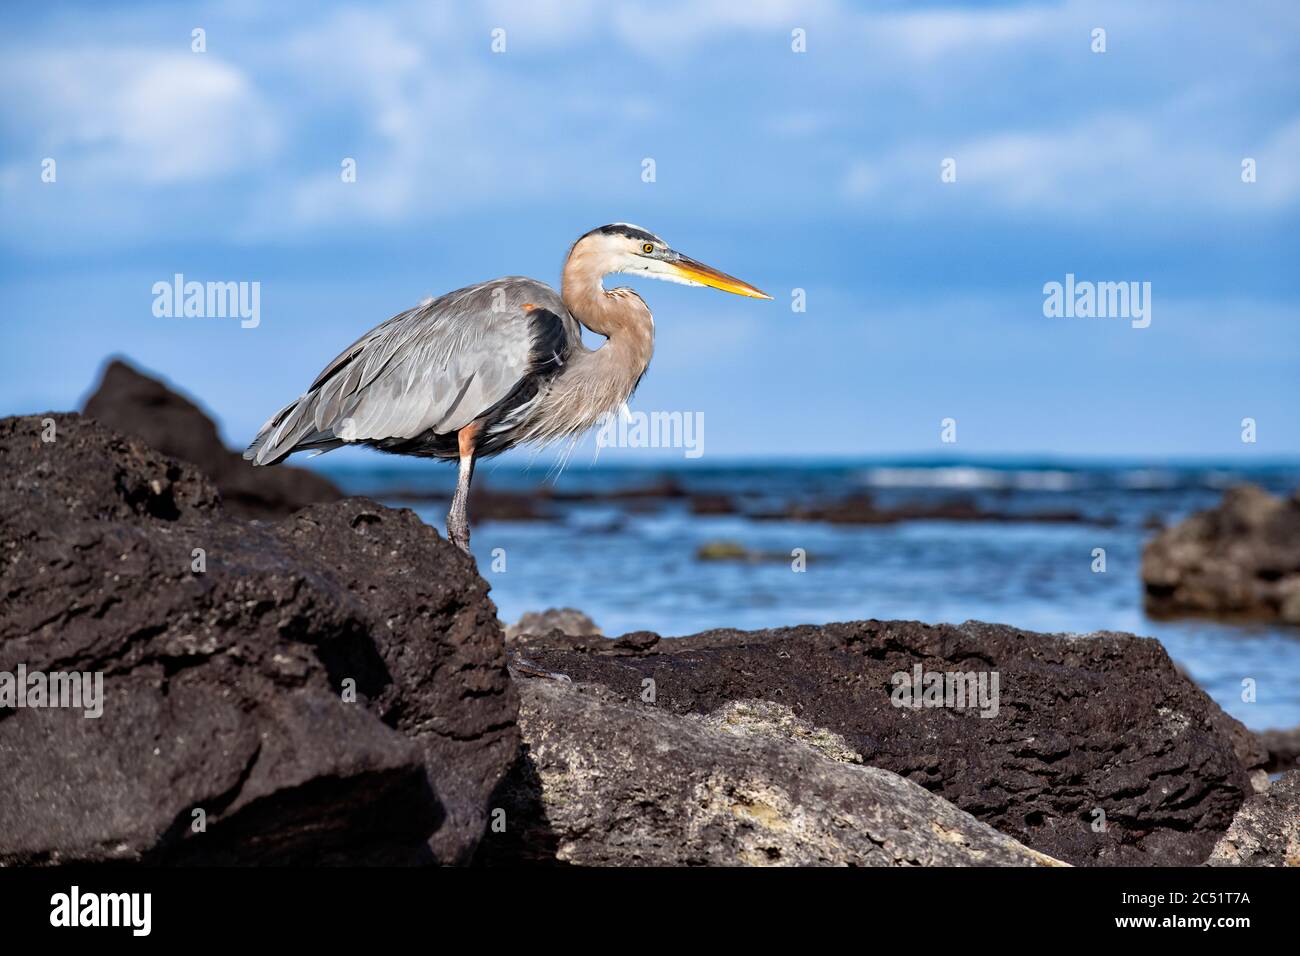 Heron standing on a rock in Playa de los Alemanes, Santa Cruz Island, Galapagos, Ecuador Stock Photo